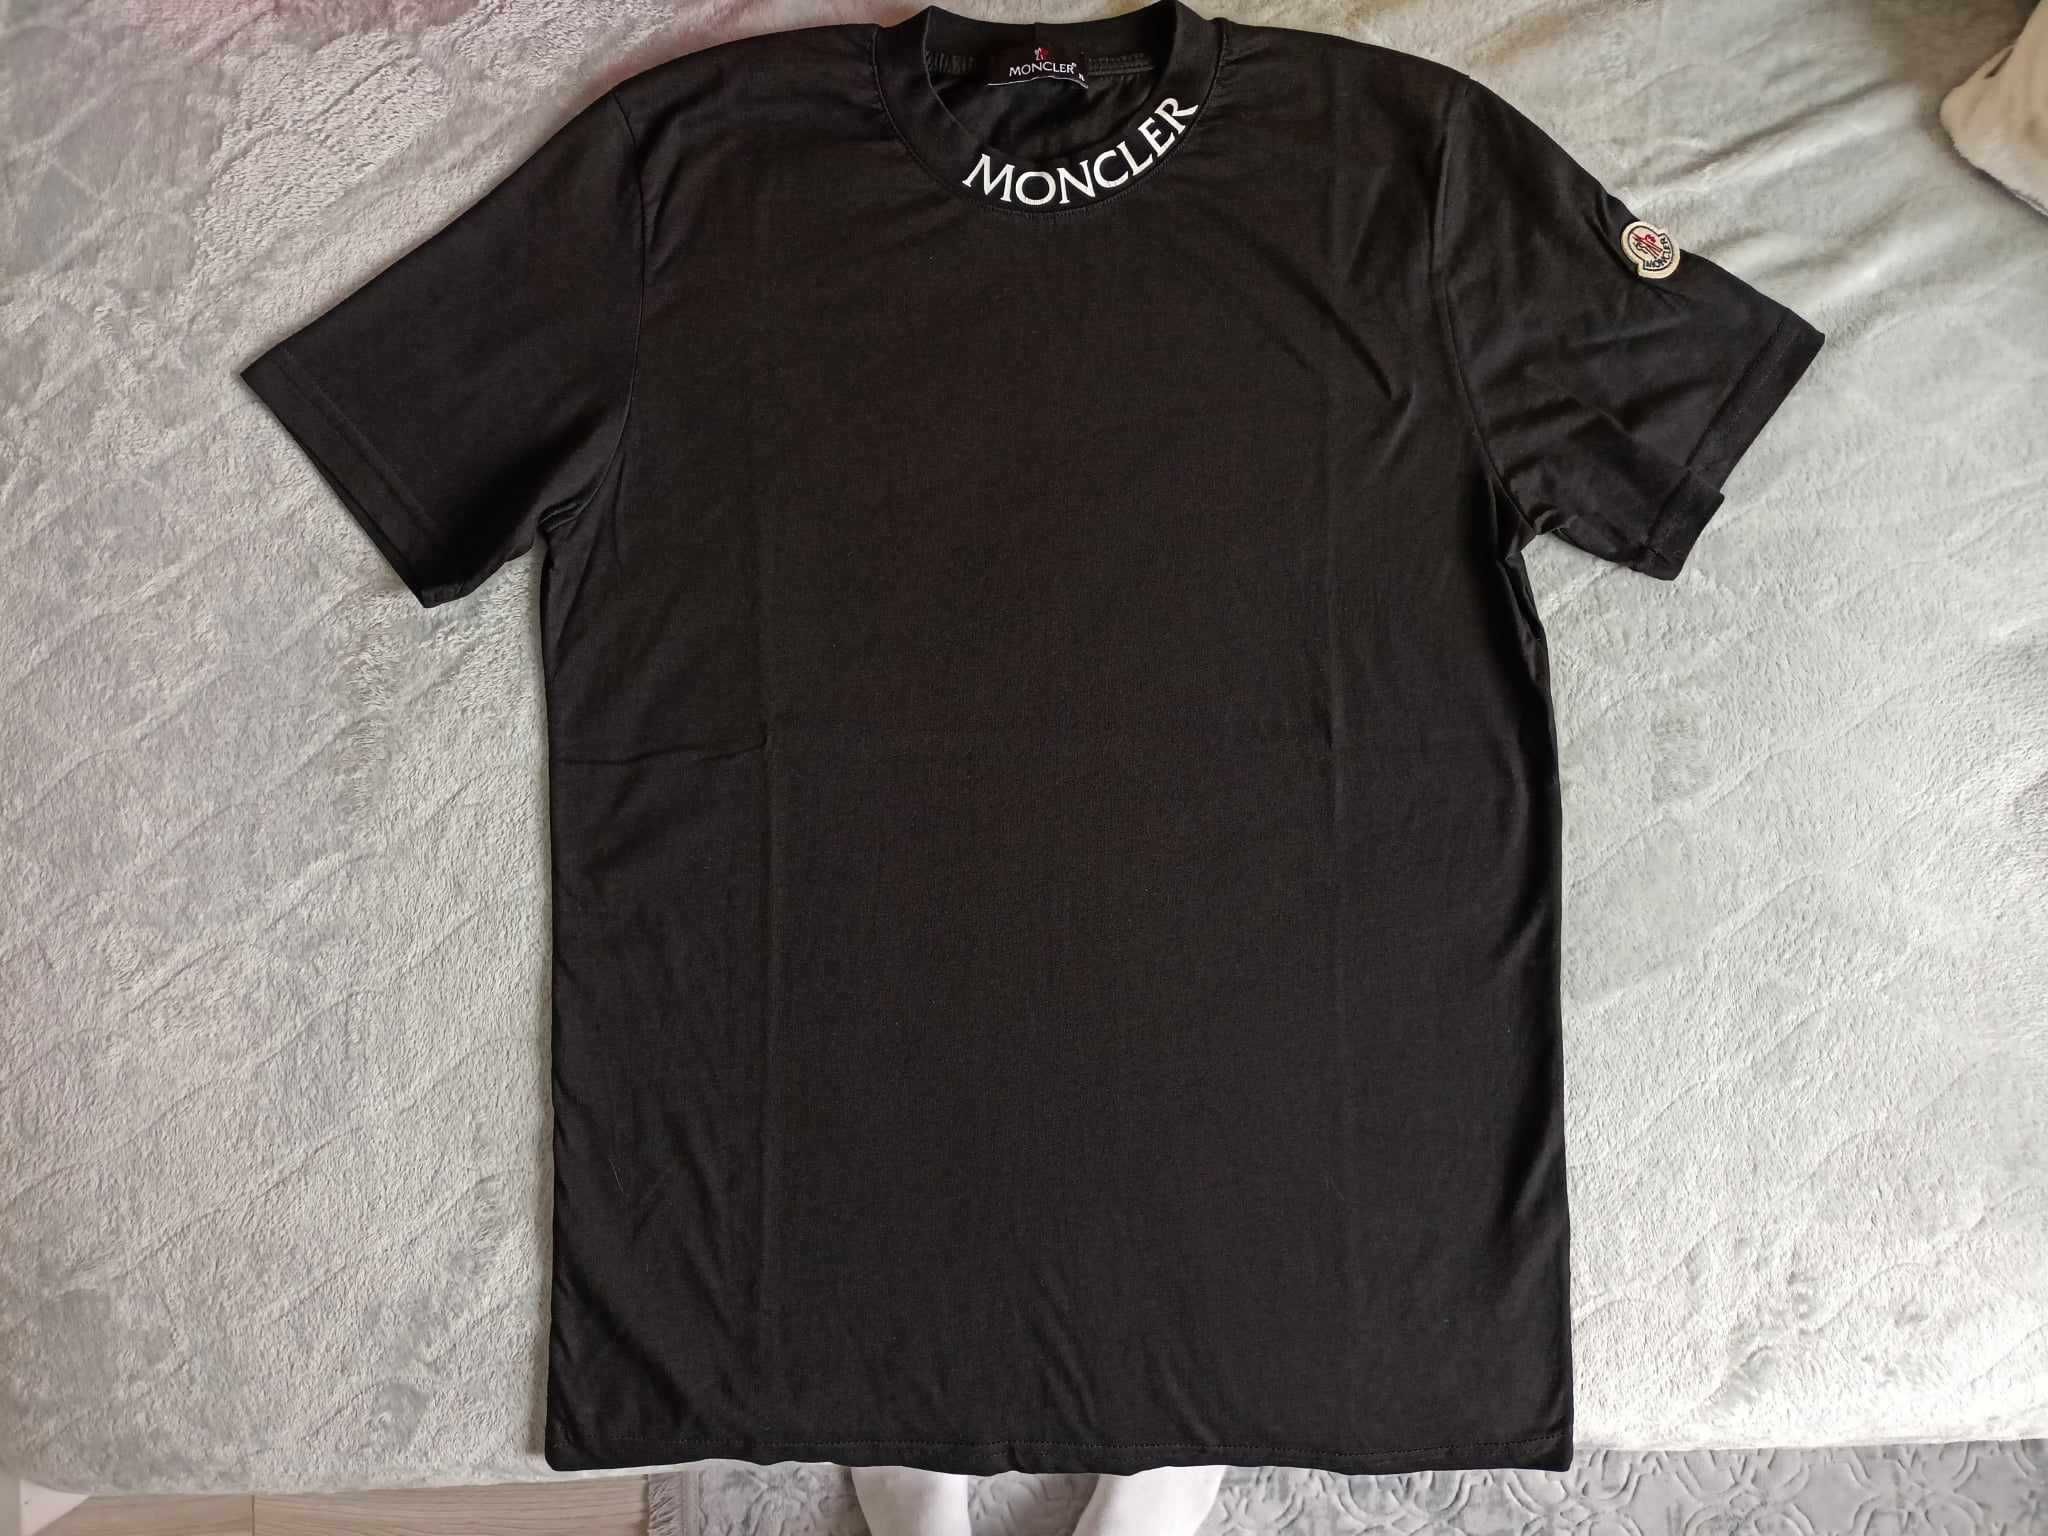 Męski t-shirt/koszulka Moncler czarny, rozmiar z metki XL (bardziej L)